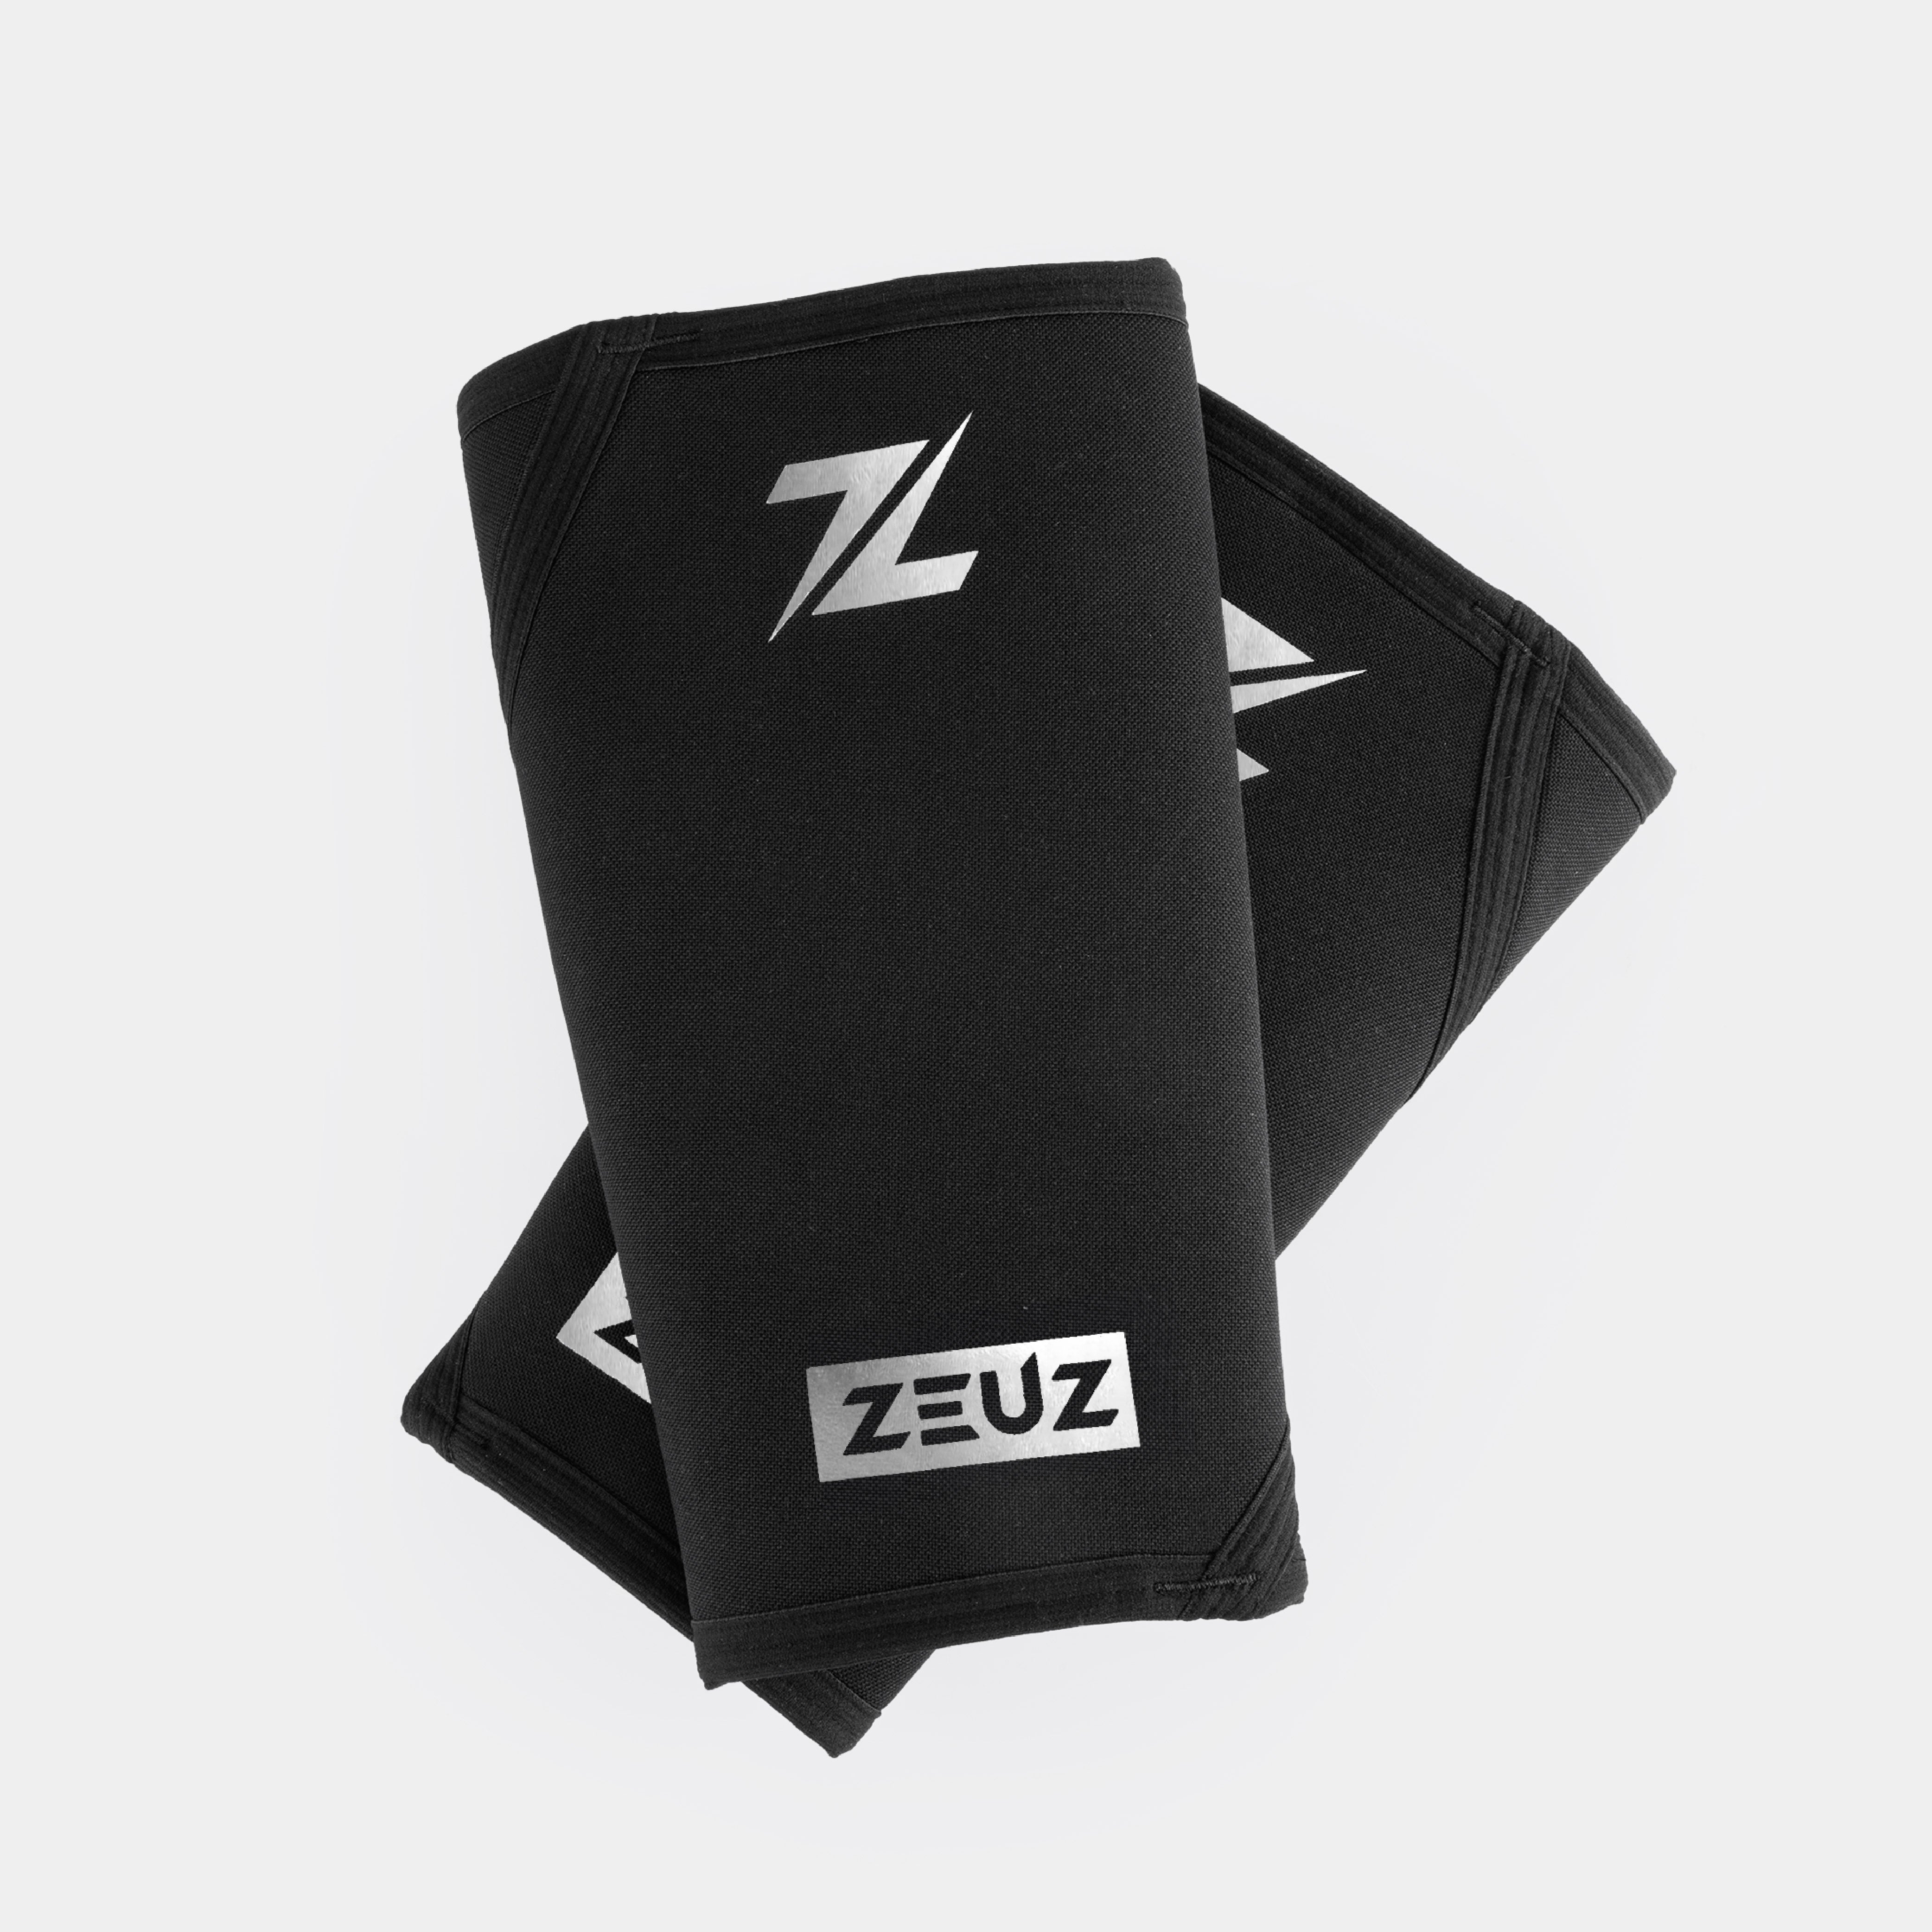 ZEUZ Powerlifting Knee sleeves -  Kniebandagen - Brace